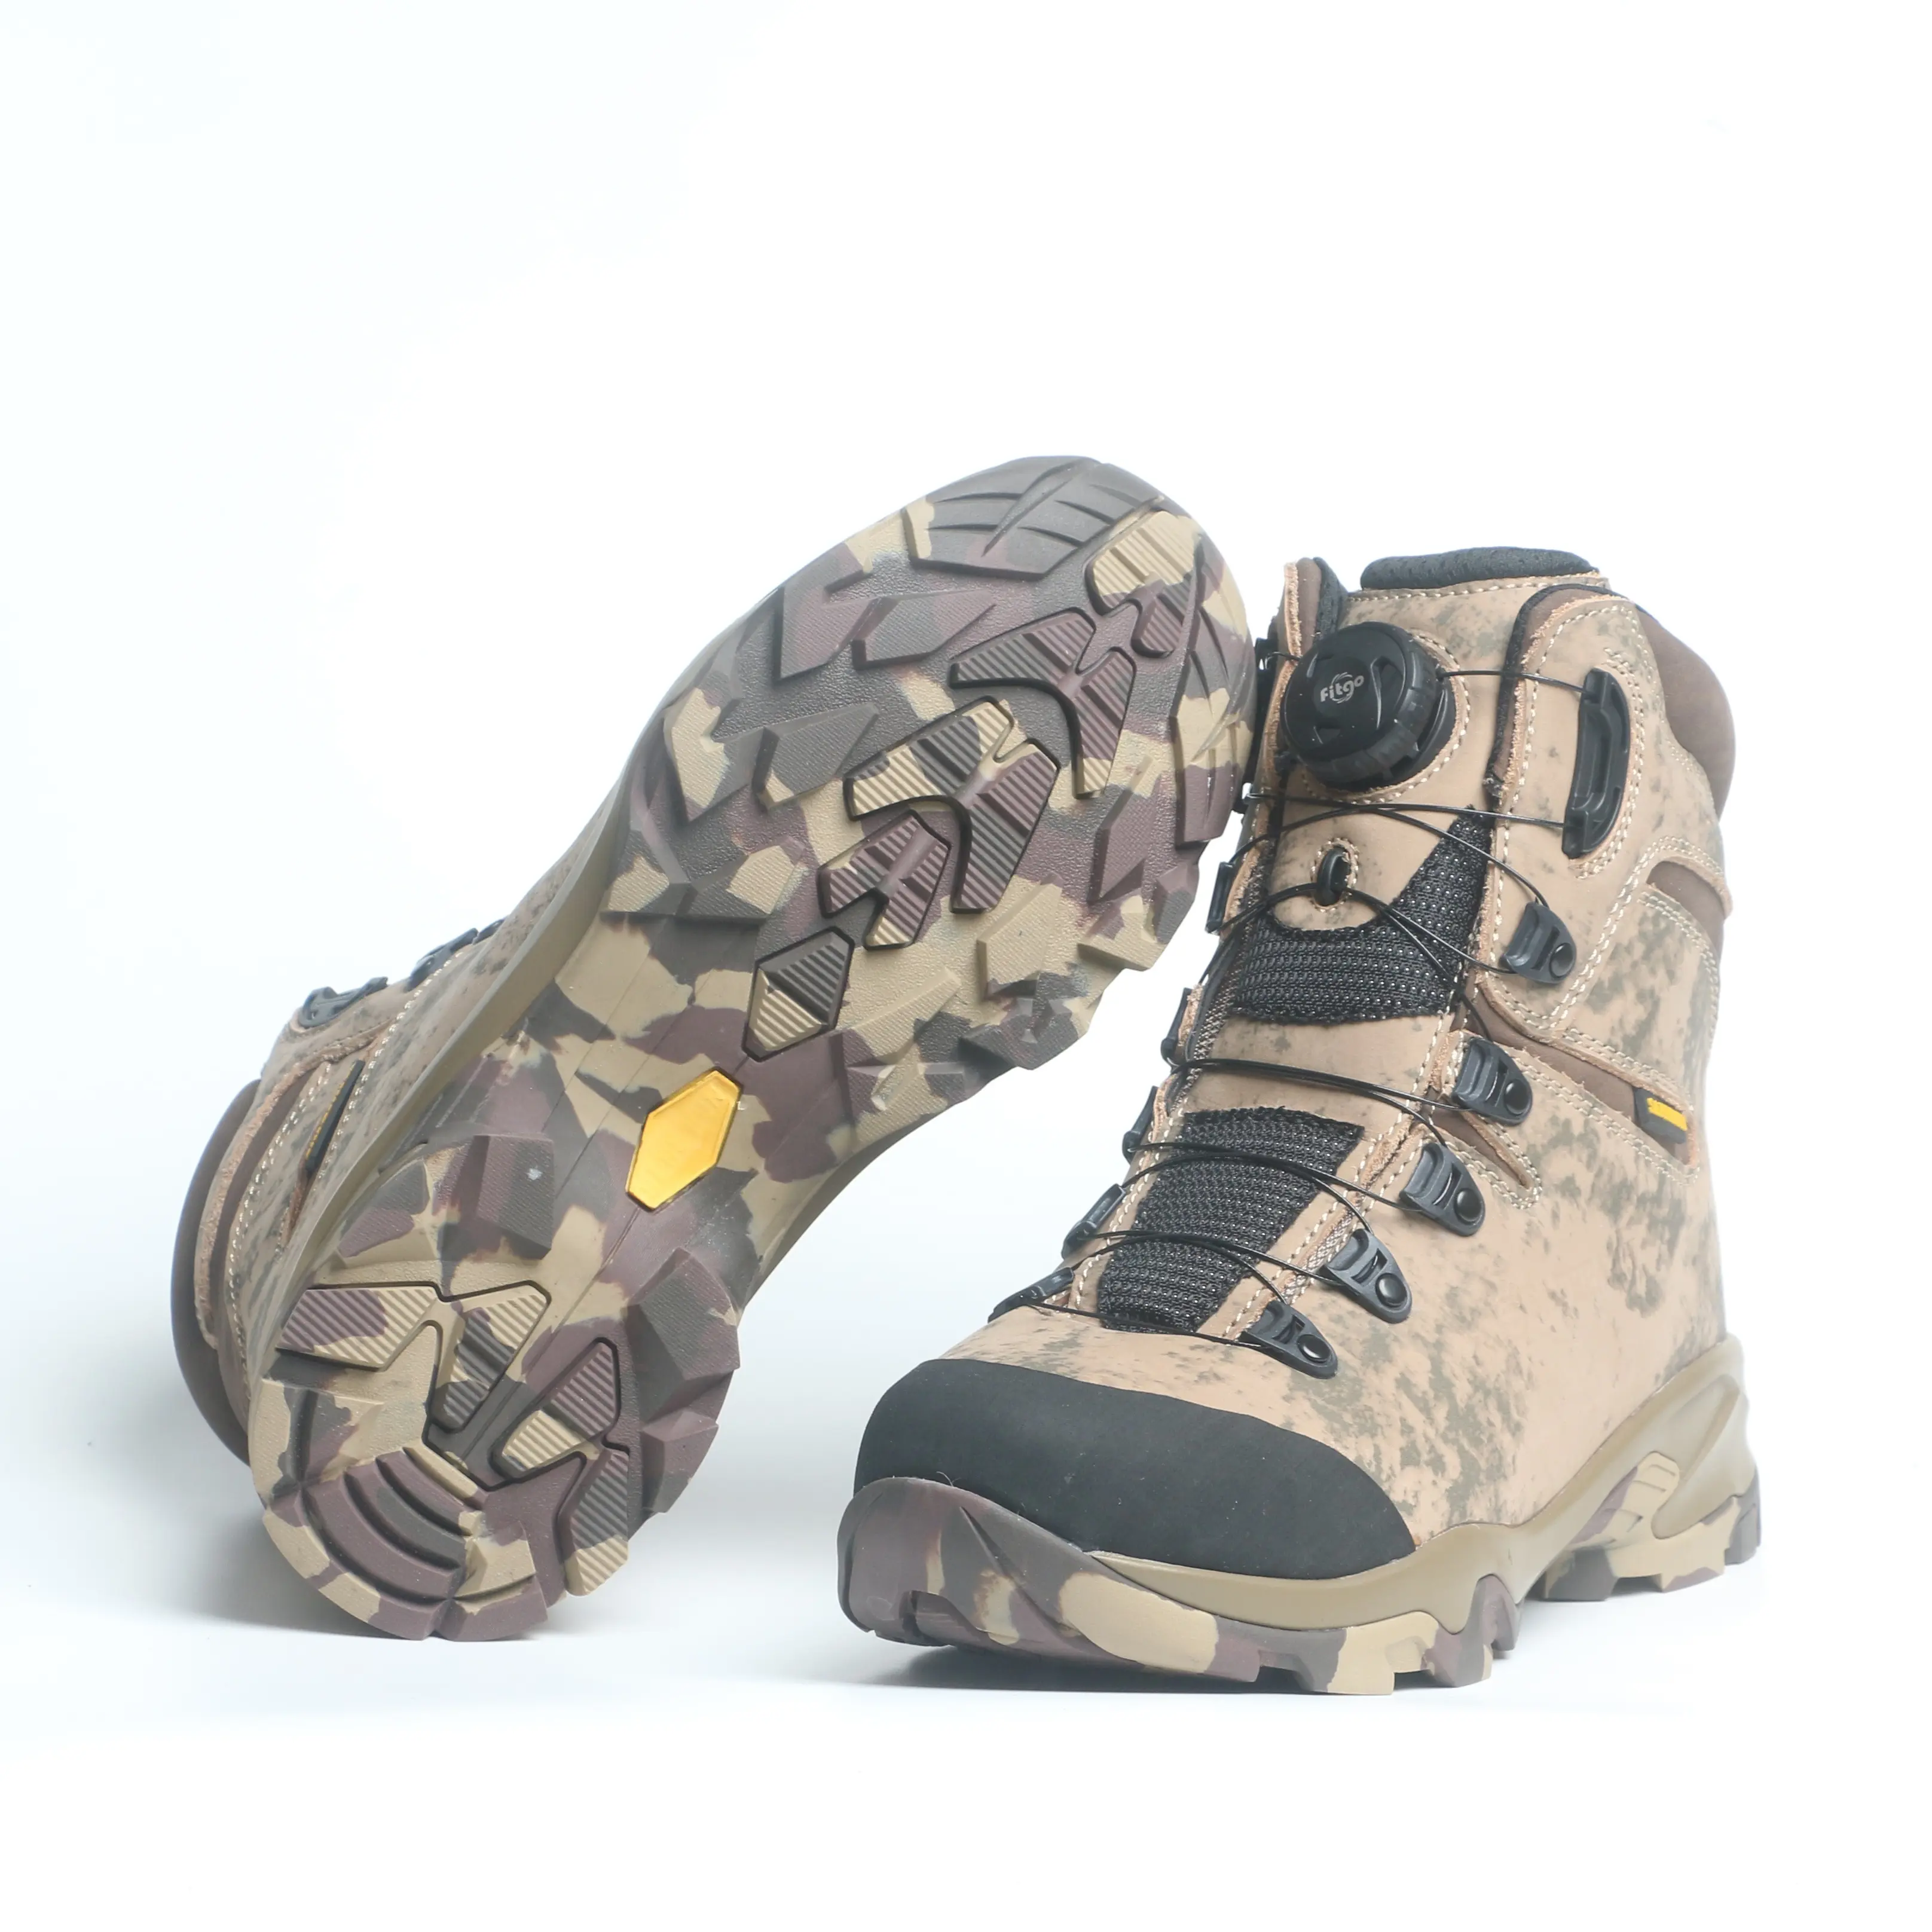 Zapatos de punta de acero de seguridad de moda para hombres y mujeres botas de trabajo zapatos de cuero protectores parte inferior de goma corte alto antideslizante